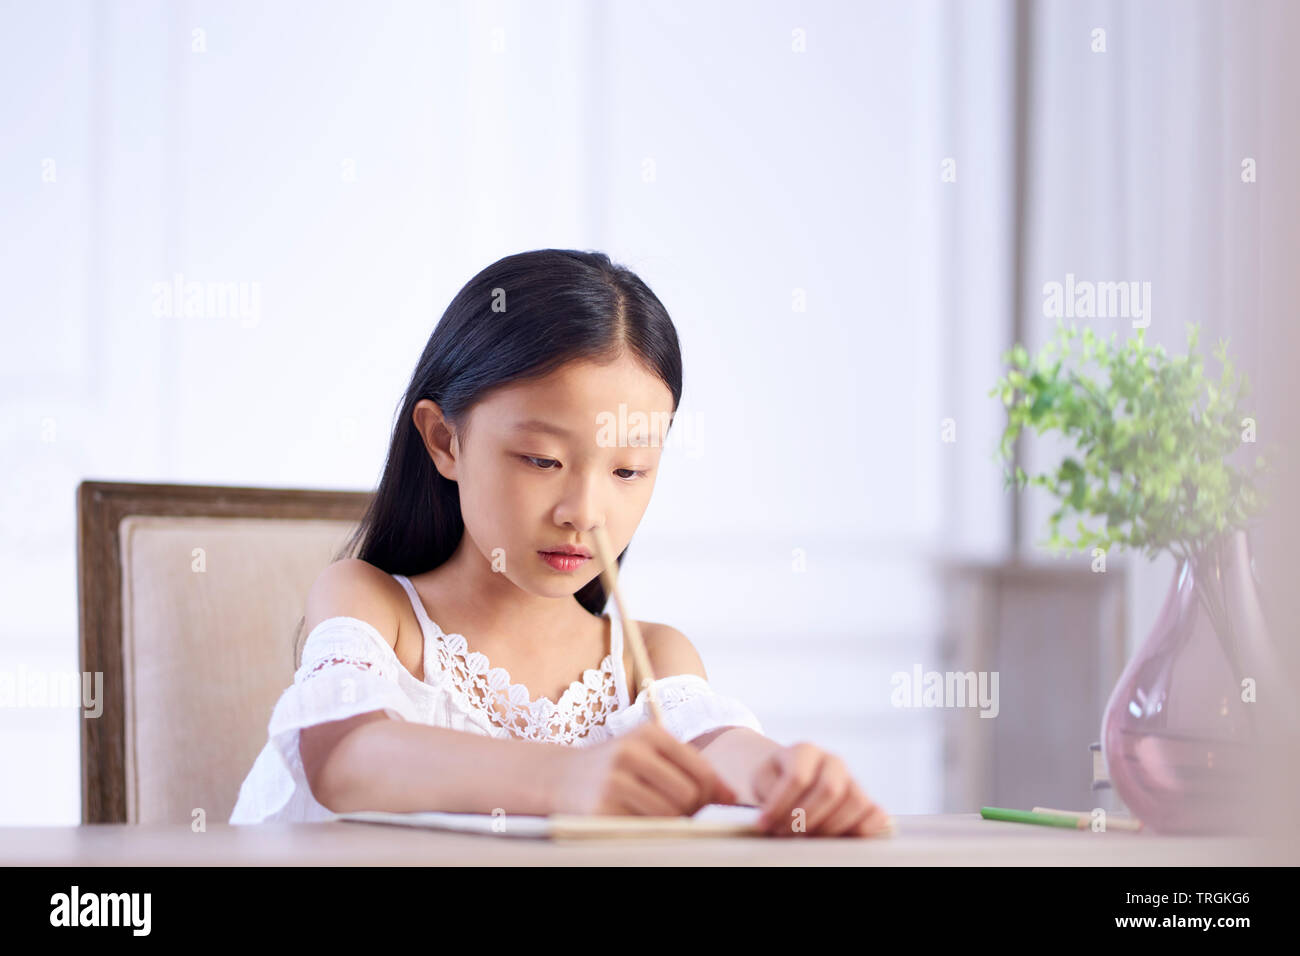 Belle petite fille asiatique avec de longs cheveux noirs assis à 24 dans sa chambre à écrire ou dessiner sur le livre de note Banque D'Images